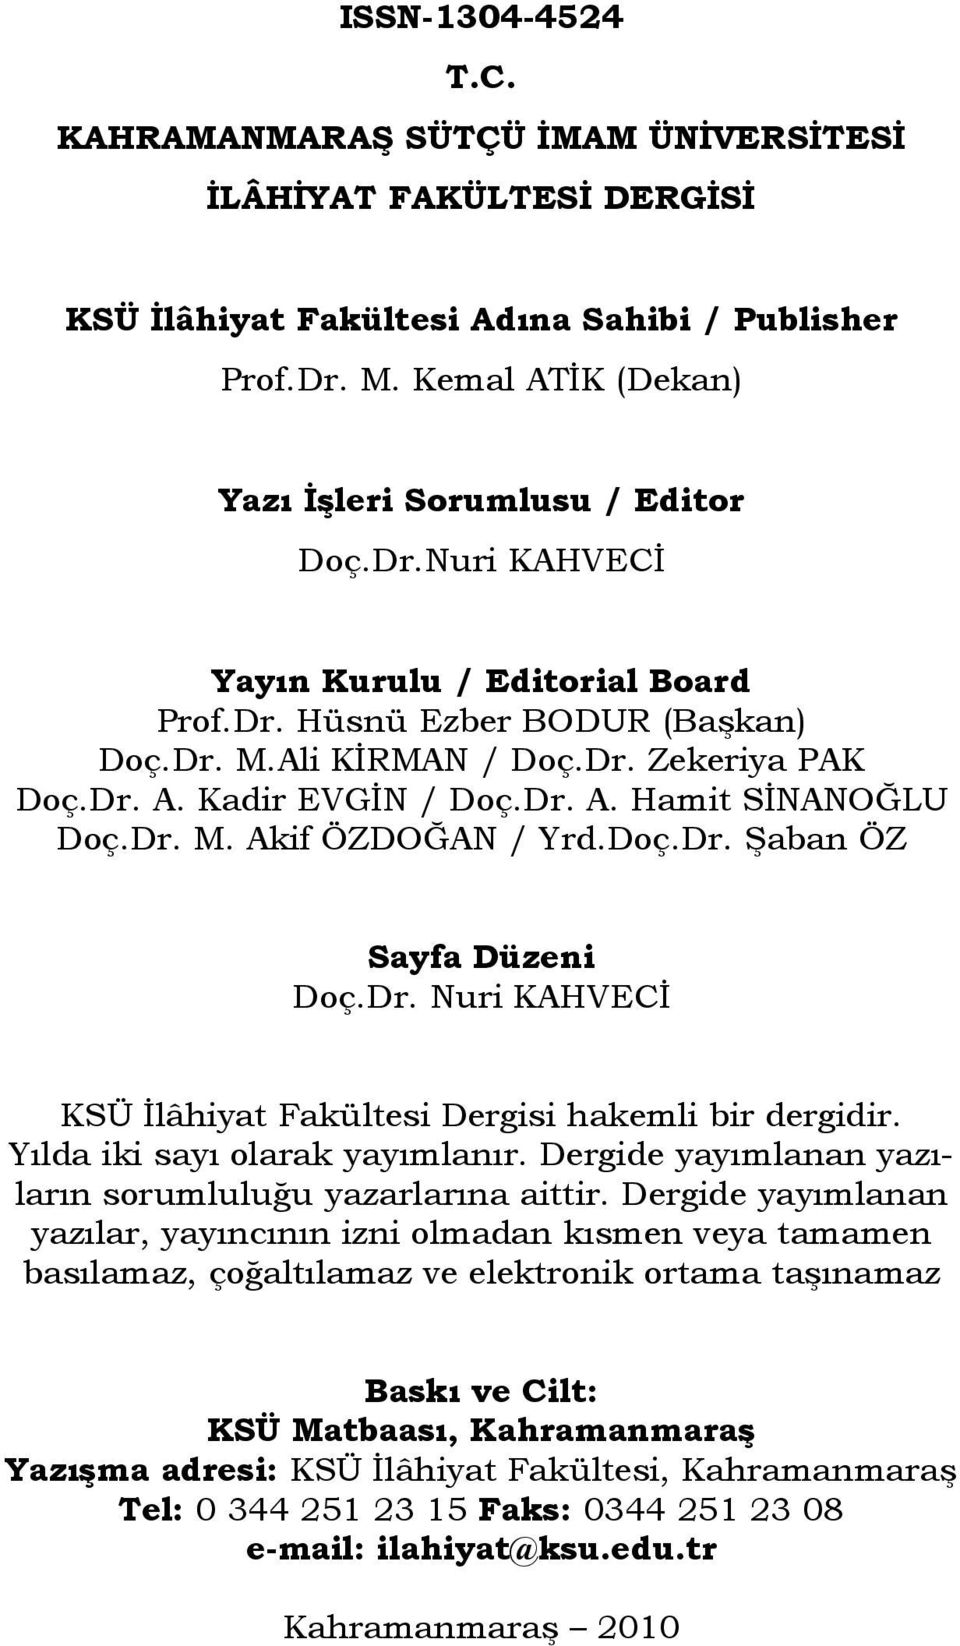 Doç.Dr. Şaban ÖZ Sayfa Düzeni Doç.Dr. Nuri KAHVECİ KSÜ İlâhiyat Fakültesi Dergisi hakemli bir dergidir. Yılda iki sayı olarak yayımlanır. Dergide yayımlanan yazıların sorumluluğu yazarlarına aittir.